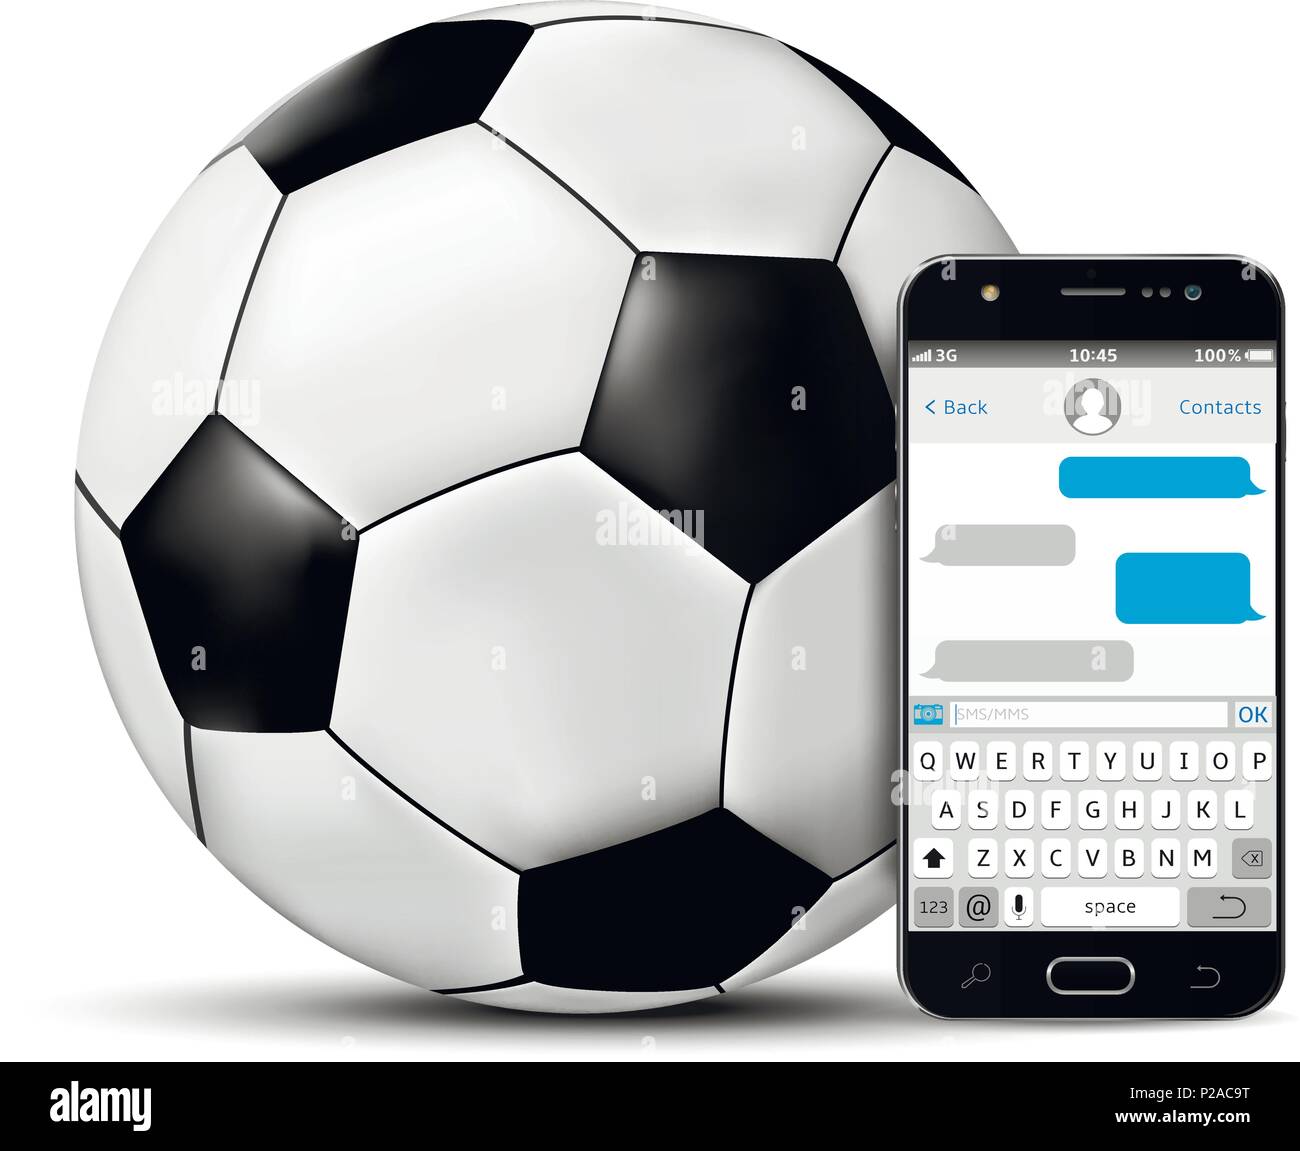 Fußball und Handy mit SMS-Chat. Vector Illustration. Stock Vektor